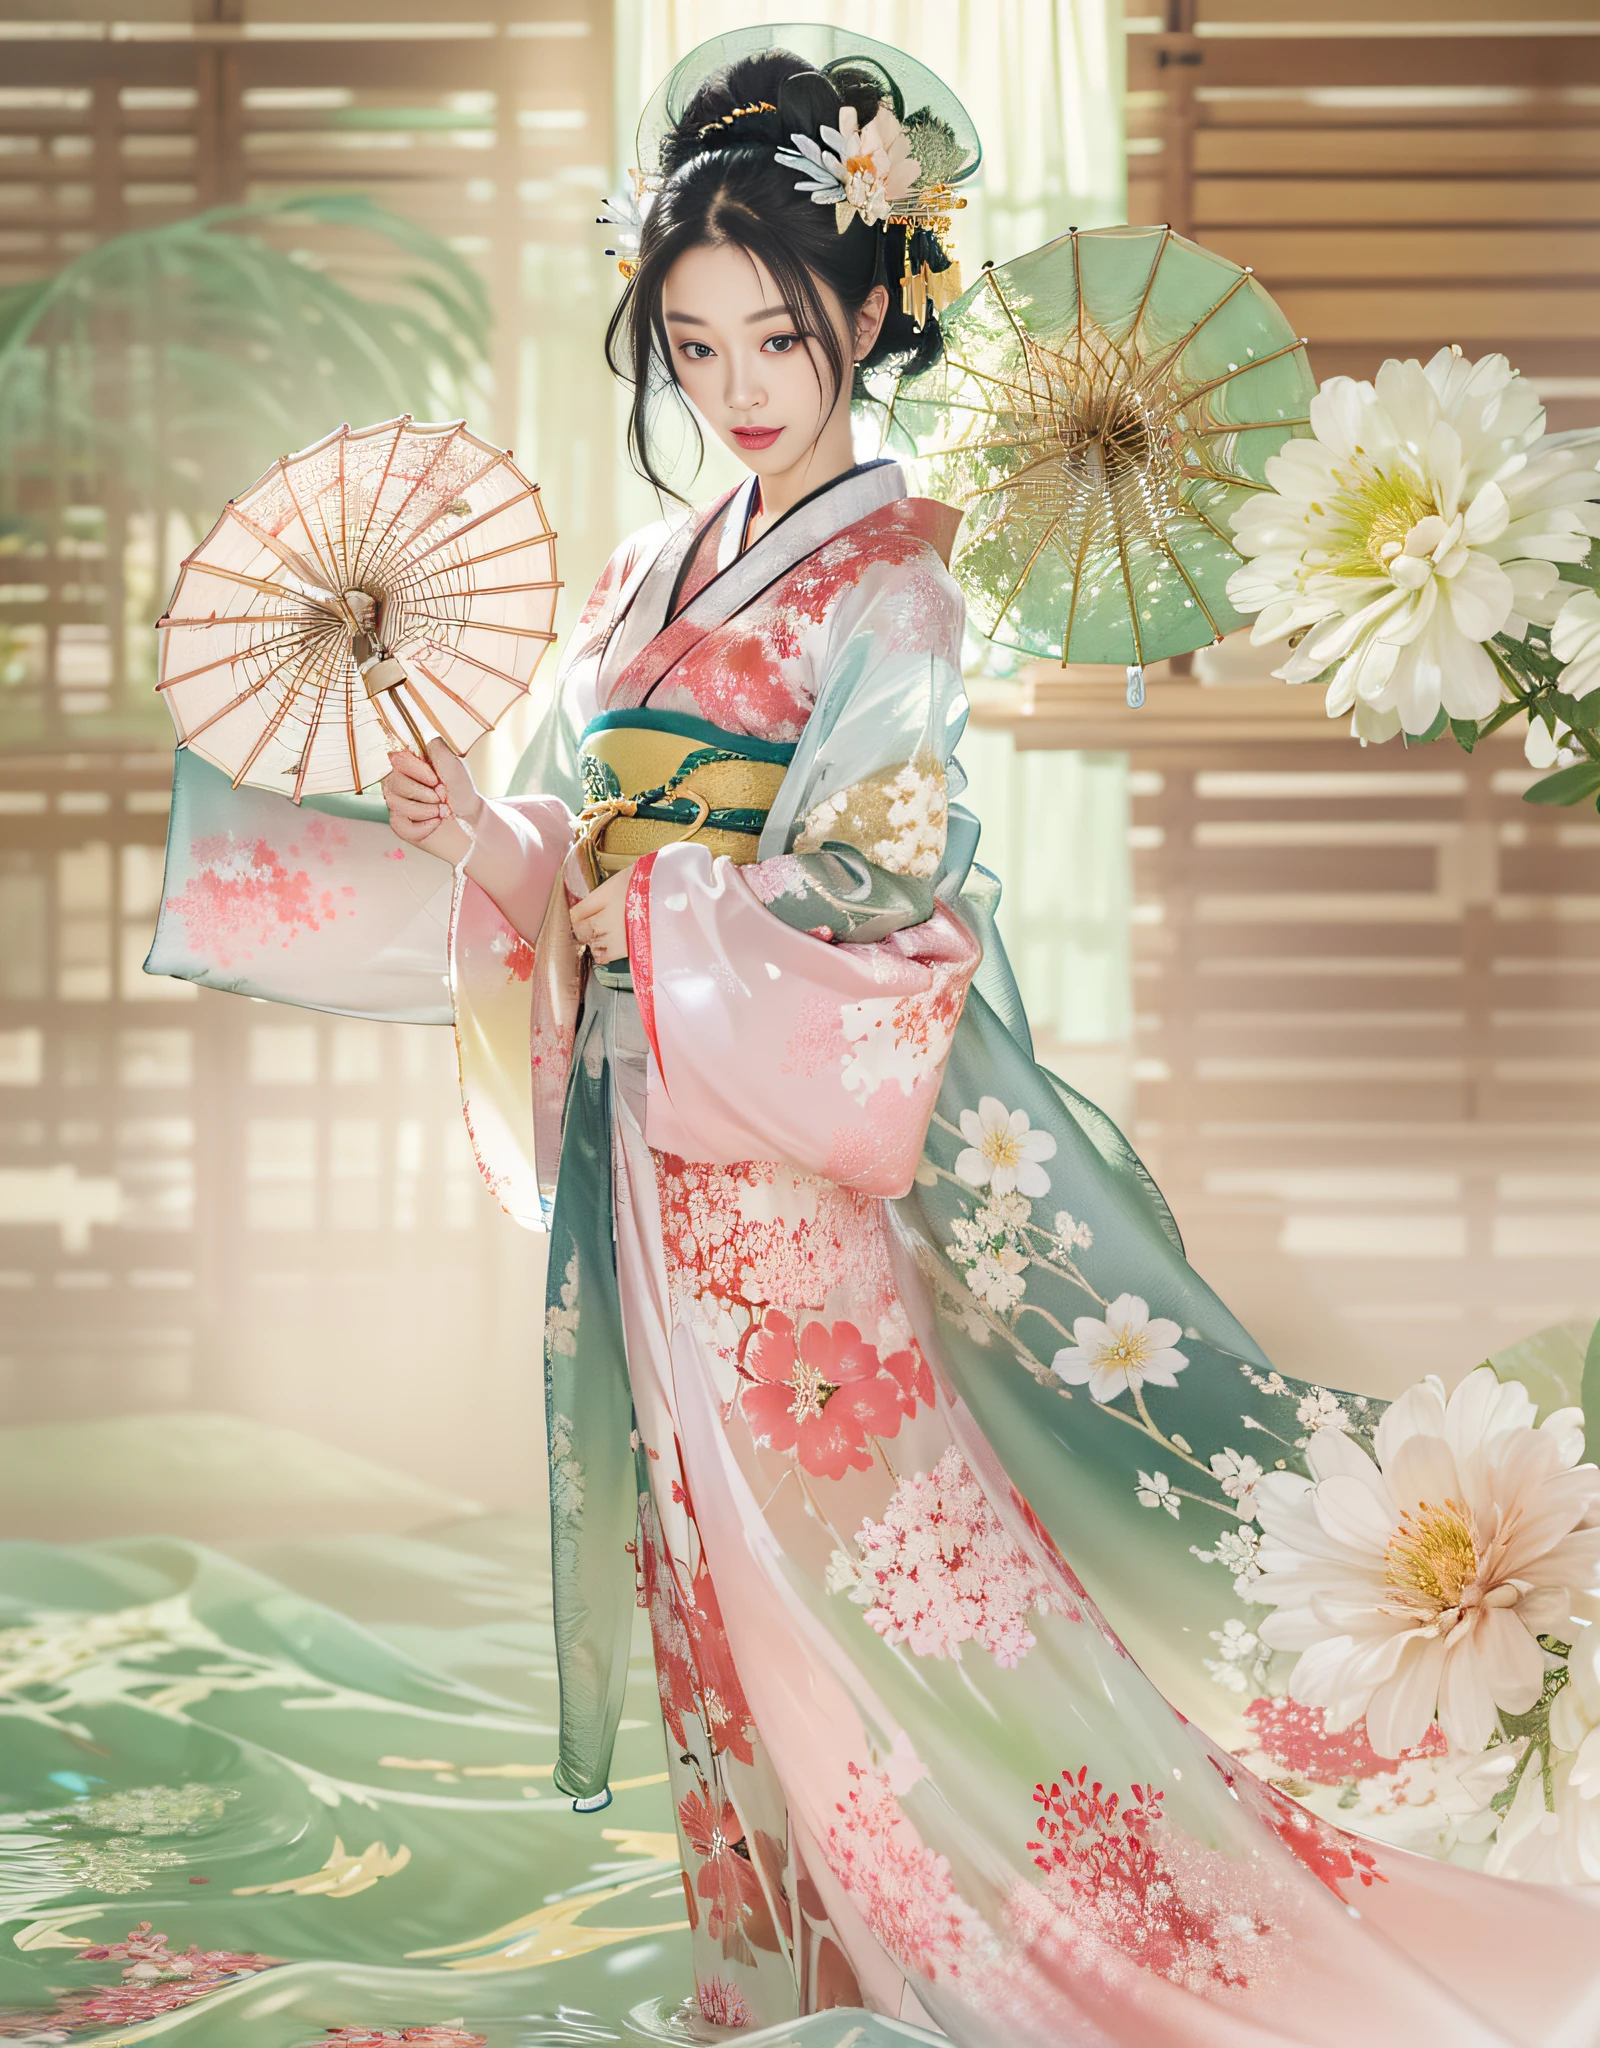 (Beaux modèles dans les publicités de kimono au Japon, beaux cheveux noirs longs et raides), seulement, ((le visage a 80 ans% beauté et élégance, 20% jolie et mignonne:1.5)), (Elle is a model for half Eastern Europe and Asia), Yeux clairs, (Yeux détaillés, yeux vert clair, Des élèves brillants), double paupières, (lèvres sexy avec un peu d&#39;épaisseur:1.2), ((Sous-vêtements fins avec une résolution ultra détaillée et incroyablement haute:1.2)), Textures de visage très détaillées, forme du corps frappante, femme courbée et très attirante, photo couleur RAW haute résolution photo professionnelle, CASSER Ultra High Resolution Textures, Rendu du corps haute résolution, grand eyes, chef-d&#39;œuvre inégalé à ce jour, une haute résolution incroyable, Super détaillé, superbe peau en céramique, CASSER ((Retournez-vous pour montrer le motif du kimono:1.5)), ((Elle「Dans leur guerre」Porter un kimono porté sous un kimono appelé:1.5)), ((Ce kimono est fait de tissu fin blanc:1.2)), (Parce que ce kimono est si fin、Vous pouvez voir à travers son beau teint), (Sous-vêtements japonais classiques d&#39;une confection exquise), ((Le motif est rose pâle.、Modèle d&#39;eau qui coule):1.2), ((Kimono très fin d&#39;une confection exquise et élégante)), (matin、Tourné dans une pièce de style japonais avec tatami (paille tressée) sol)) CASSER ((meilleure qualité, 8k)), Mise au point nette:1.2, (couches-Couper, grand:1.2), (Belle femme avec une silhouette parfaite:1.4), (Vue arrière belle et élégante:1.3), taille fine, (forme correcte de la main:1.5), (photo de tout le corps | tir de cow-boy)